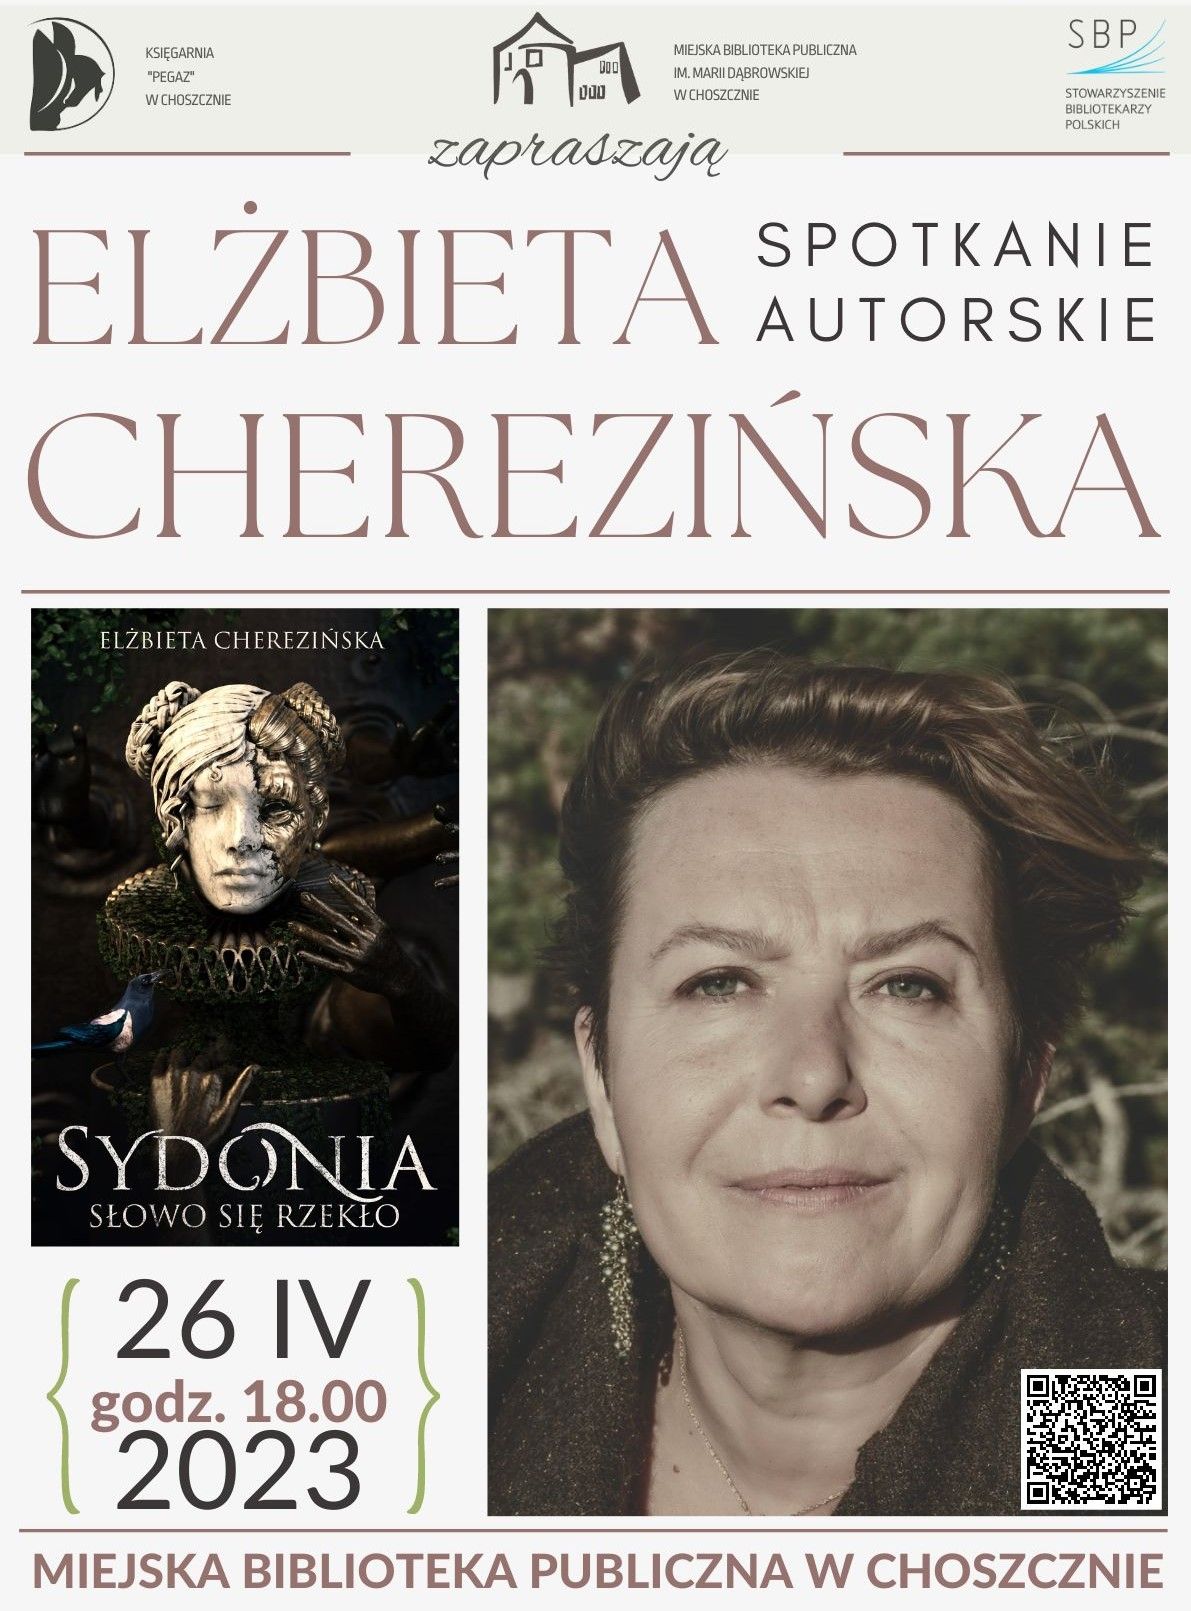 Plakat informujący o spotkaniu autorskim z Elżbietą Cherezińską - autorką powieści historycznych. na zdjęciu okładka książki, która będzie omawiana na spotkaniu oraz fotografiapisarki 